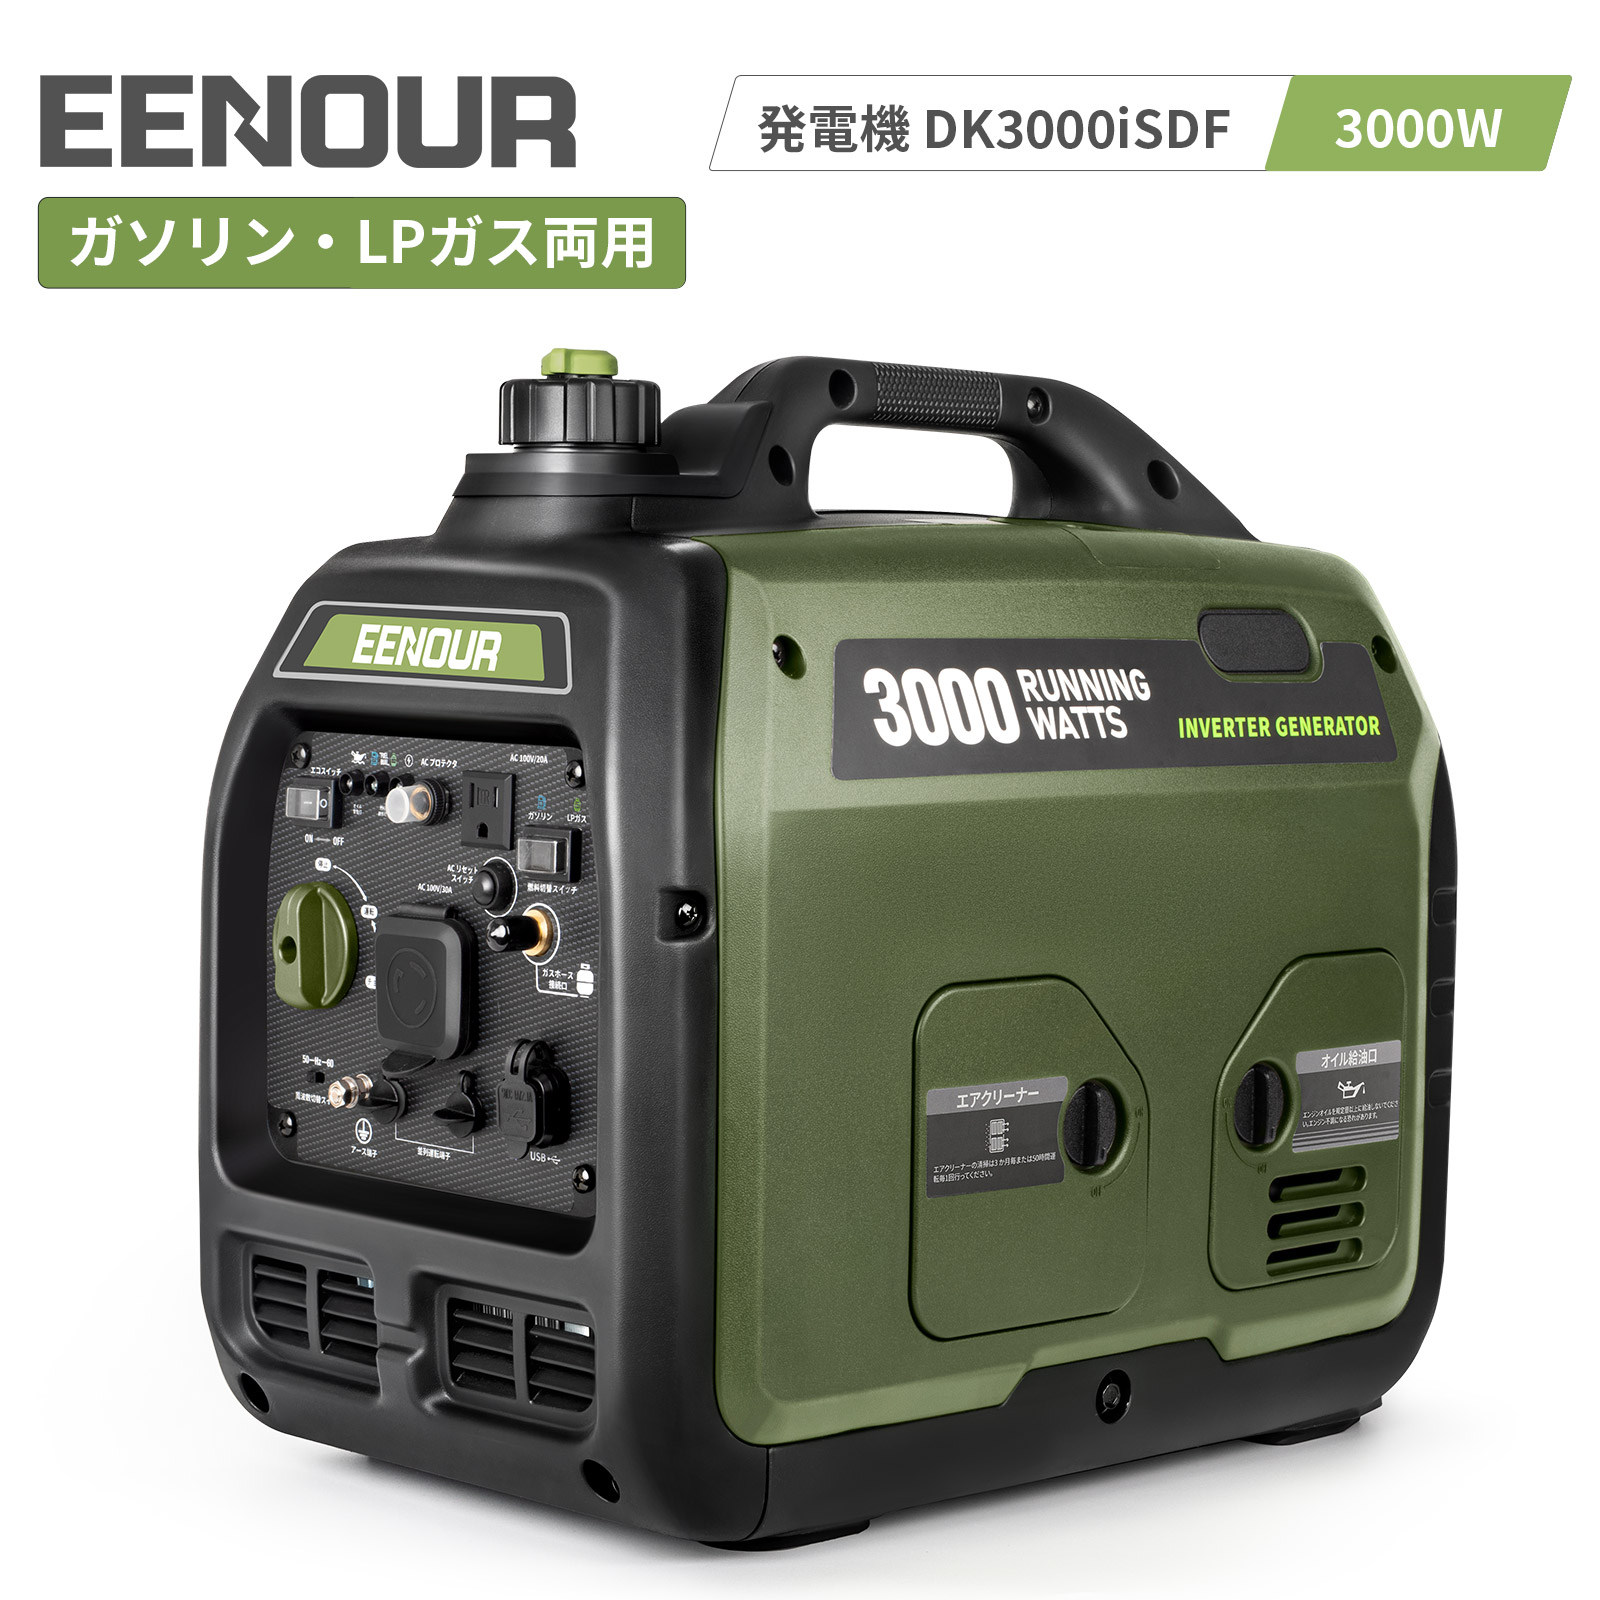 ご注文で当日配送 ヤマハ インバータカセットガス発電機 EF900ISGB2